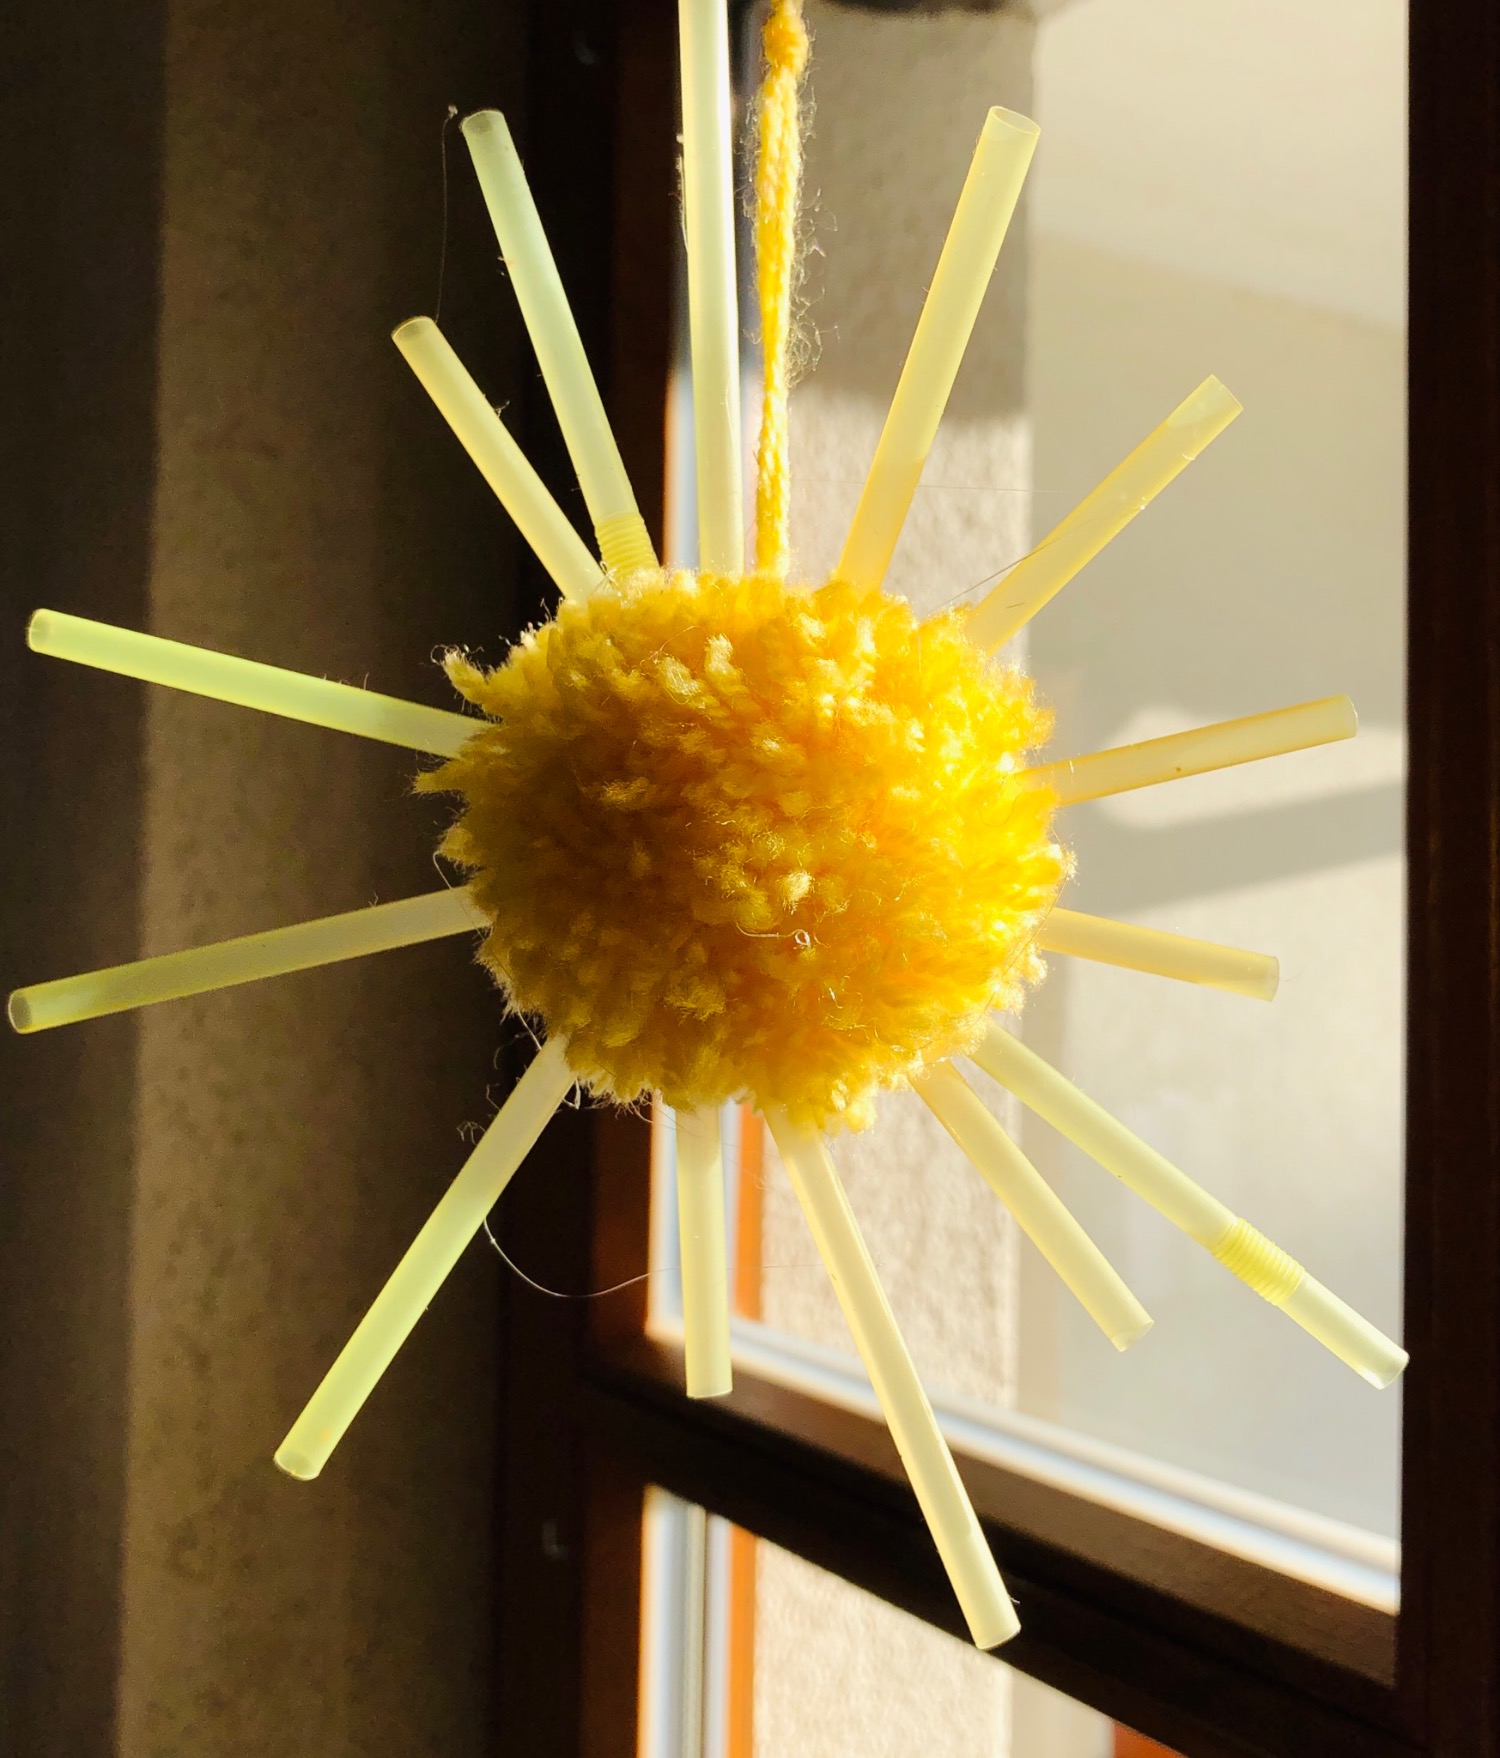 Titelbild zur Idee für die Beschäftigung mit Kindern 'Sonne mit Strahlen: aus Wuschel und Strohhalmen'